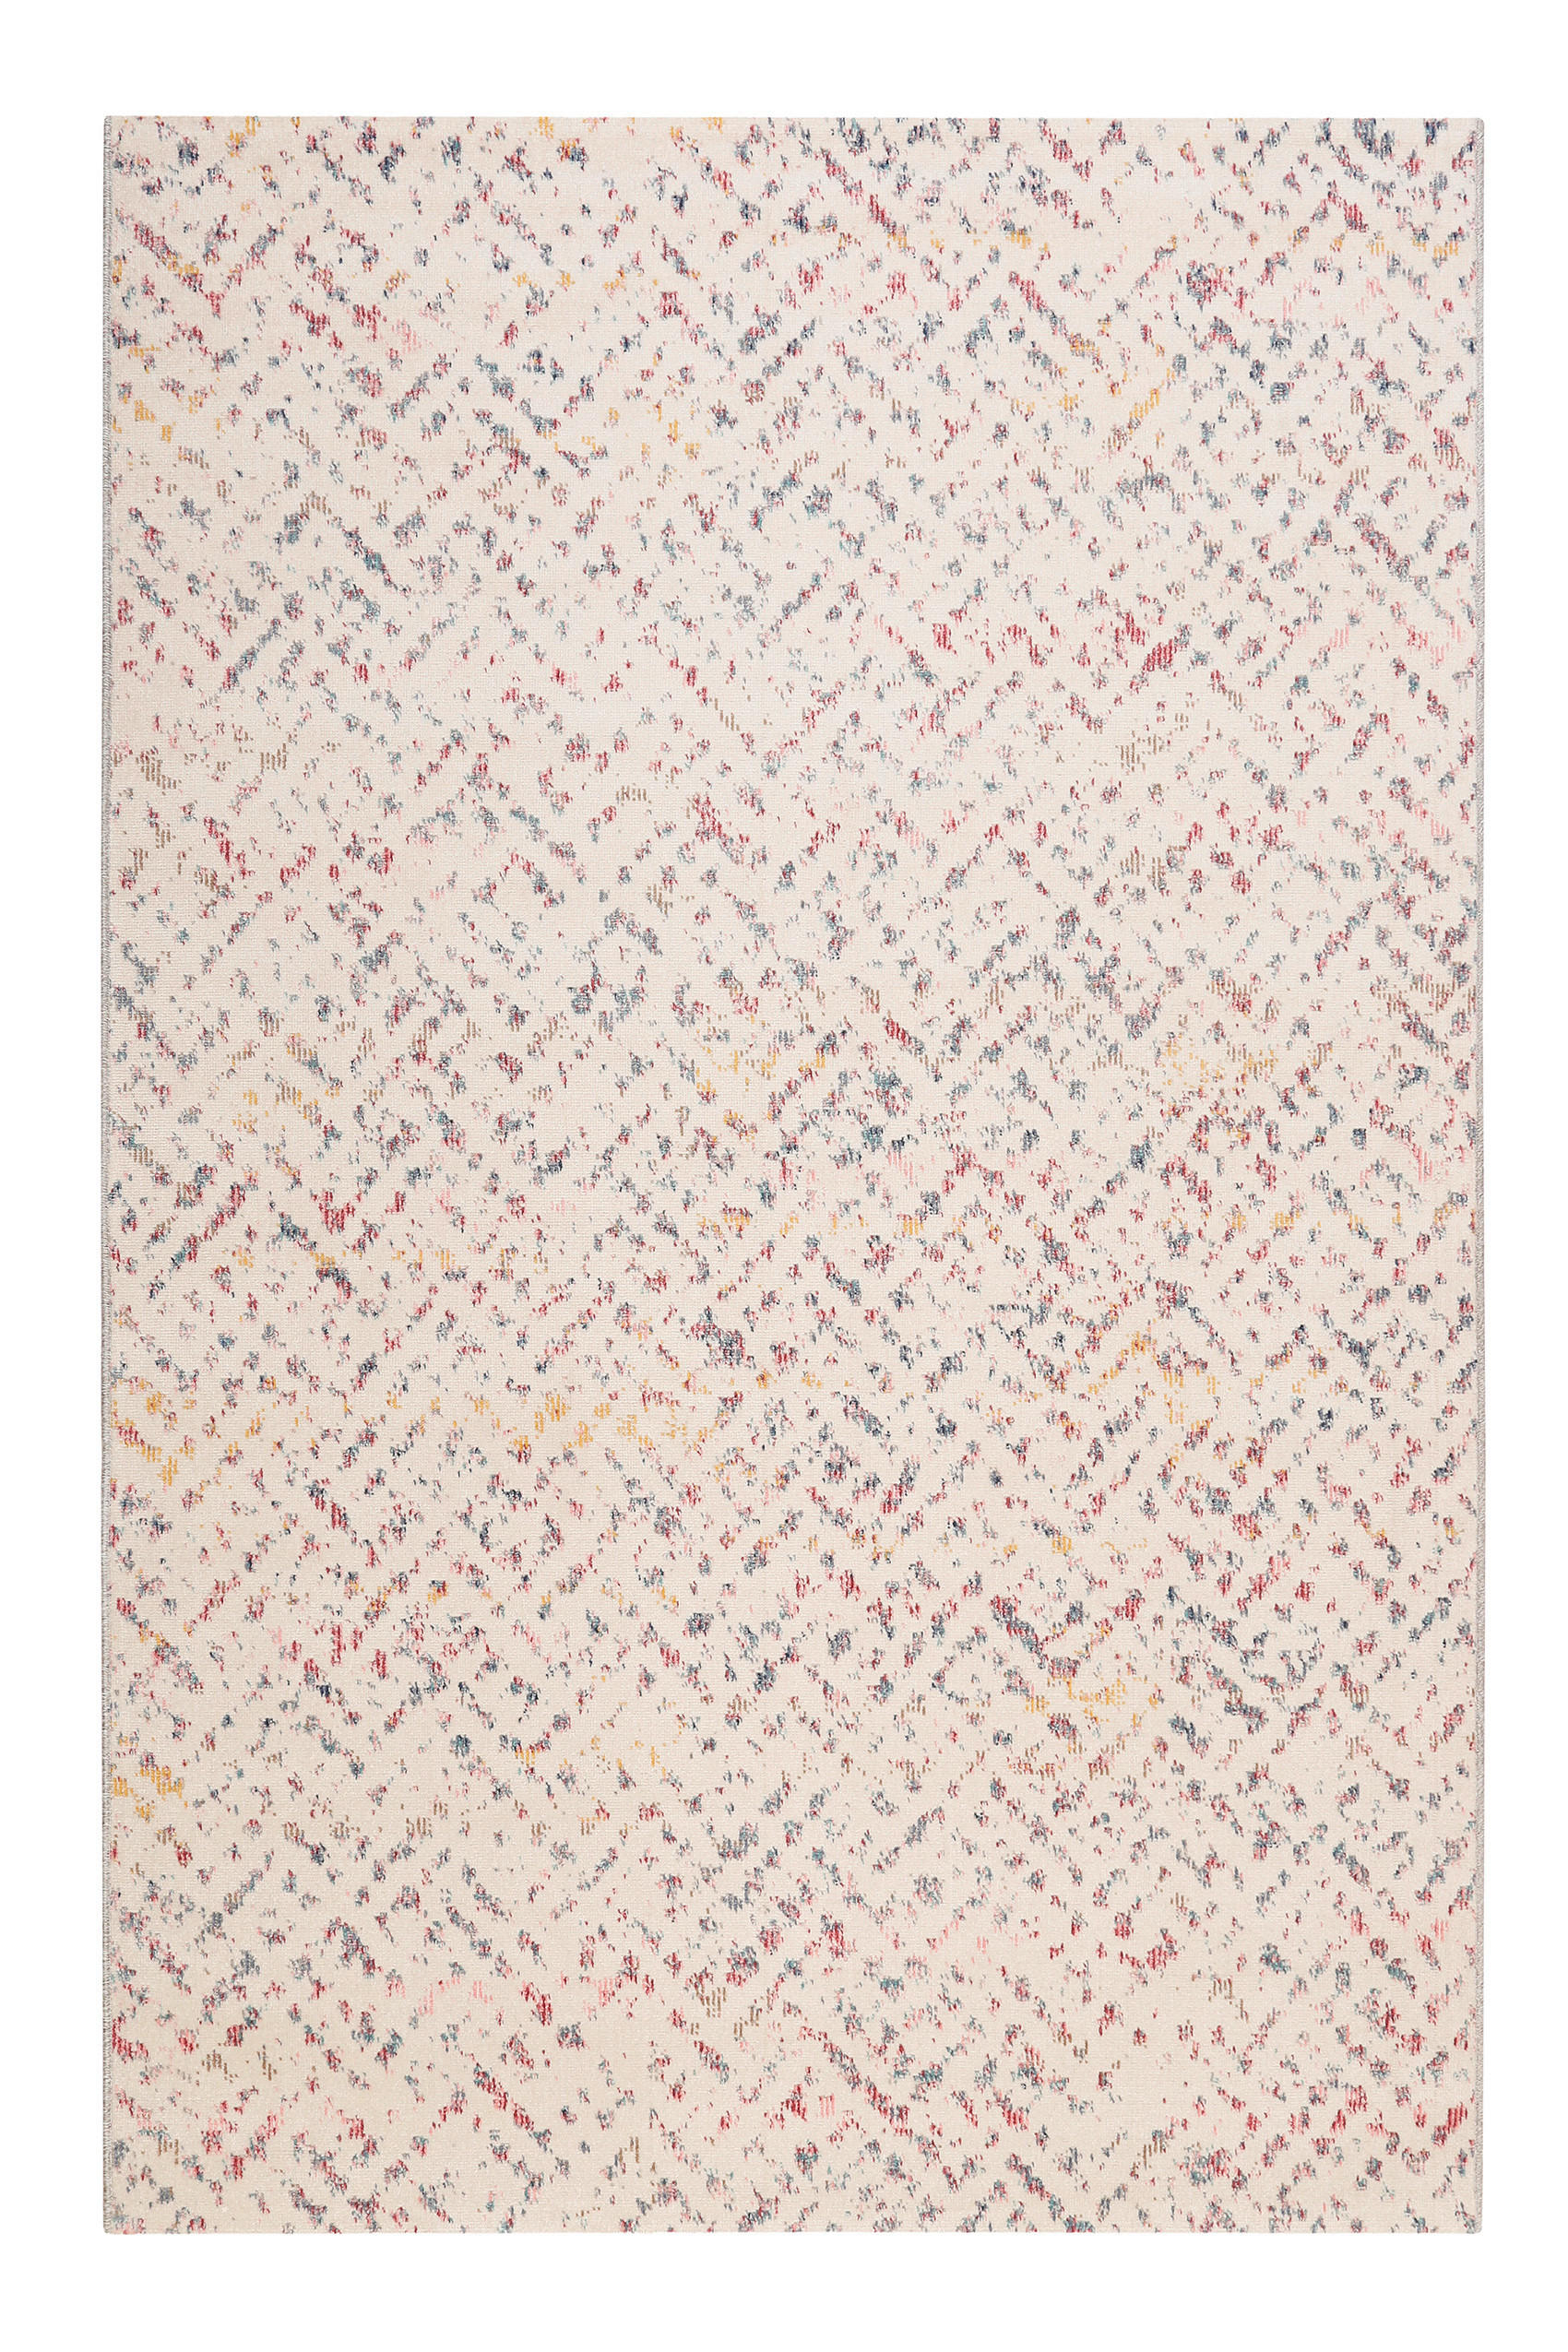 OUTDOORTEPPICH  133/200 cm  Beige   - Beige, KONVENTIONELL, Textil (133/200cm) - Esprit